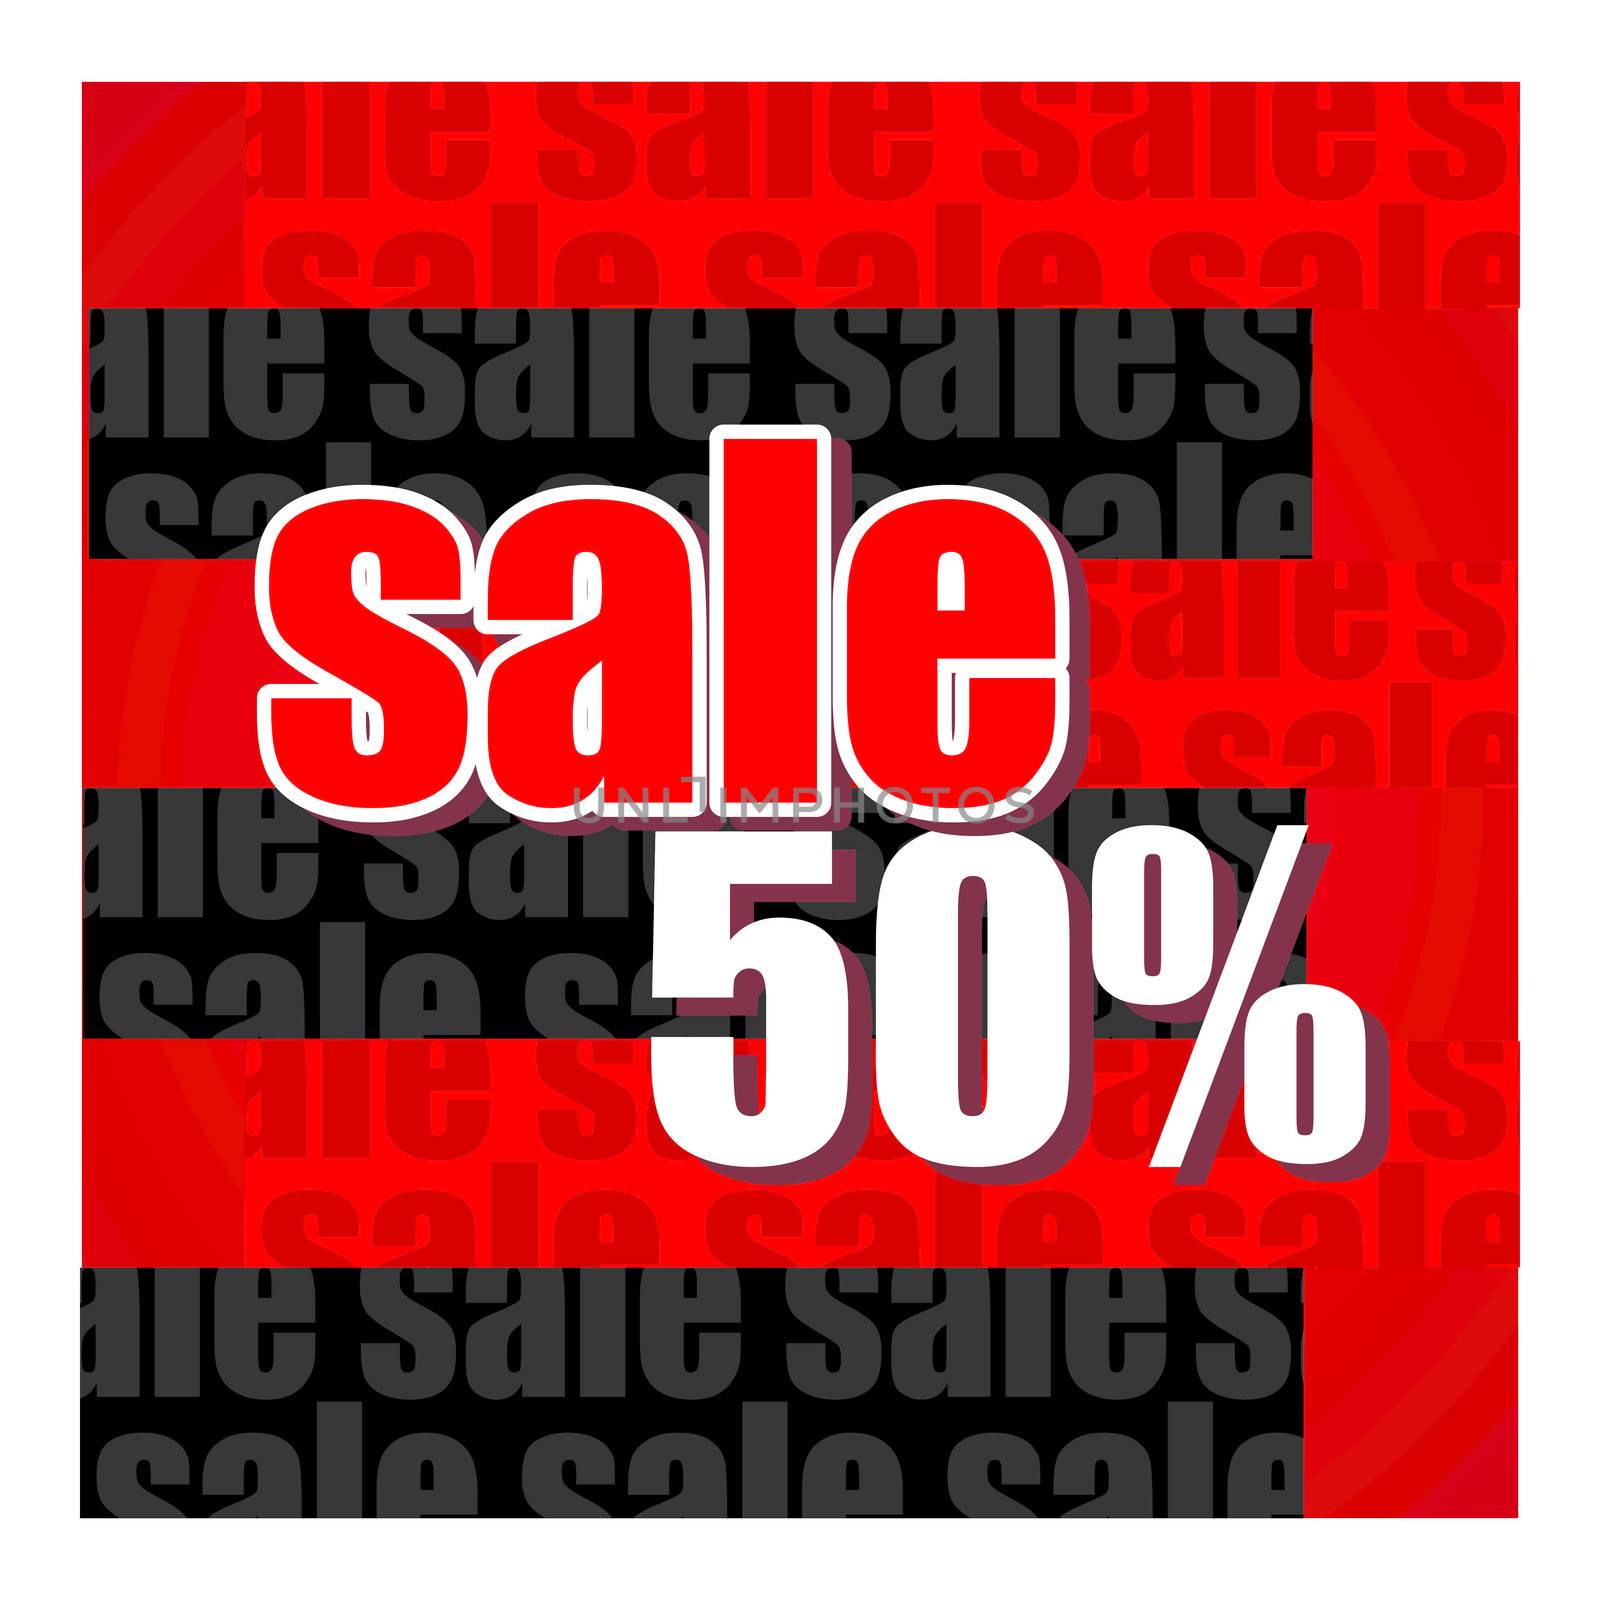 Sale percent by Crownaart